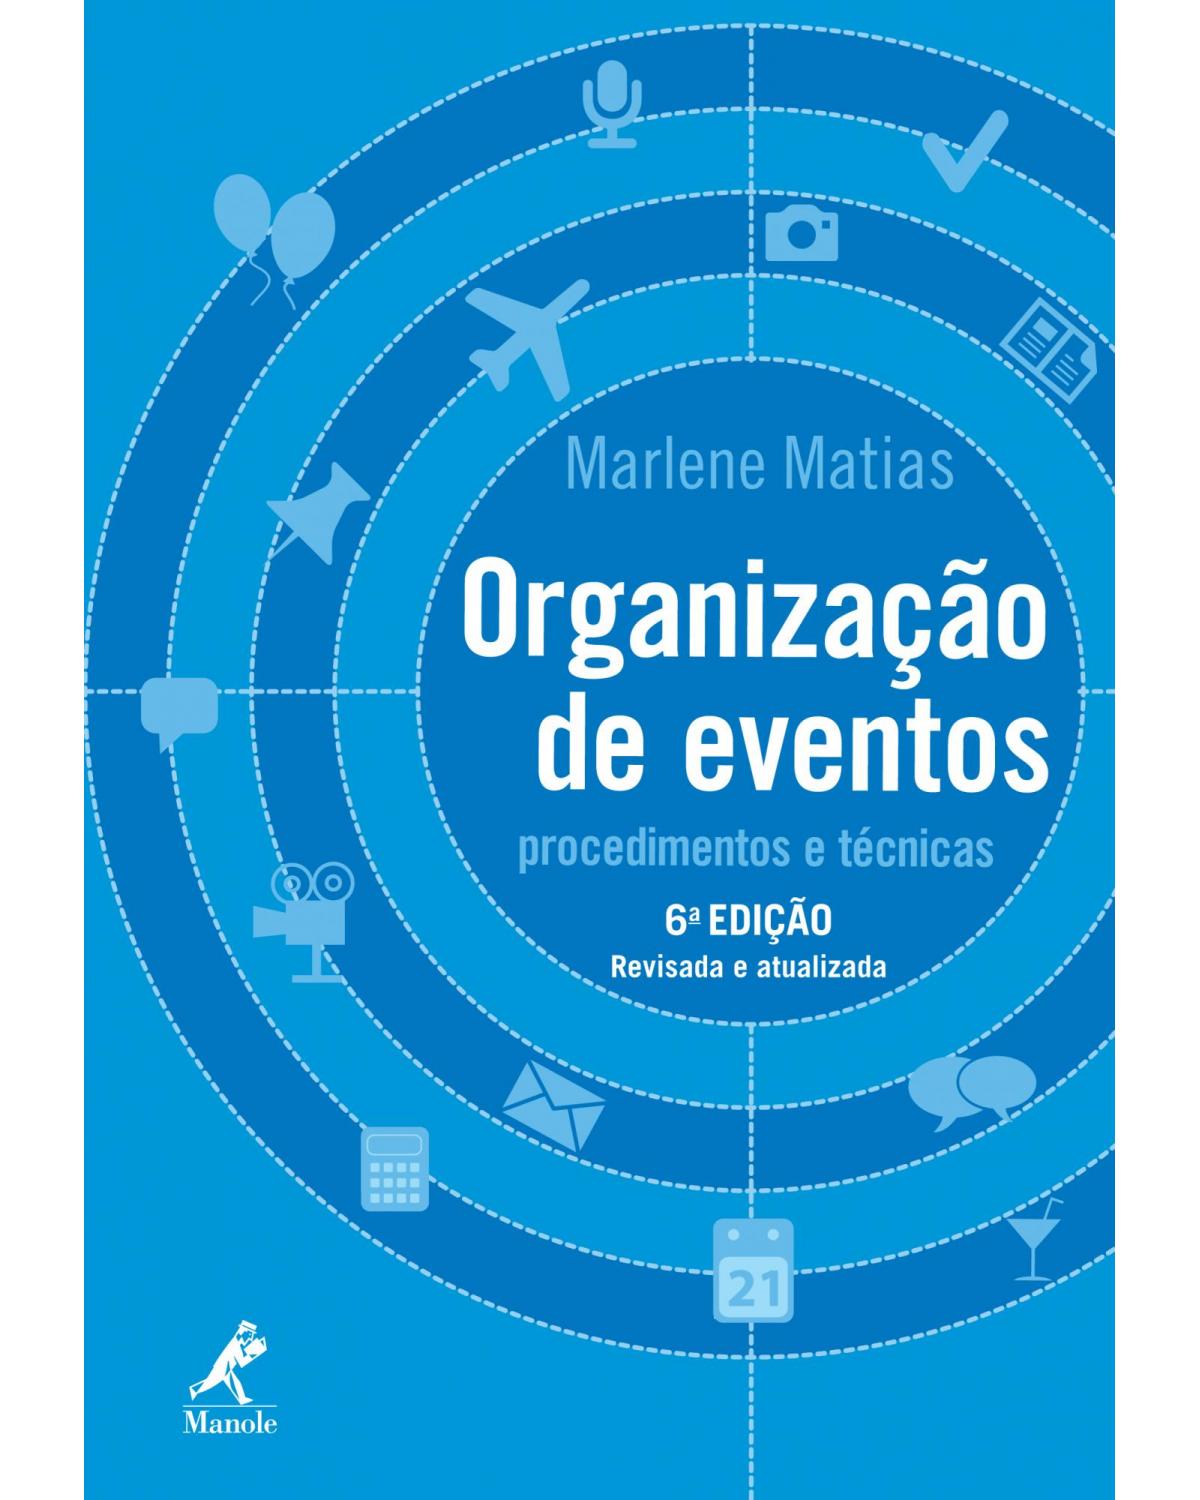 Organização de eventos - procedimentos e técnicas - 6ª Edição | 2013